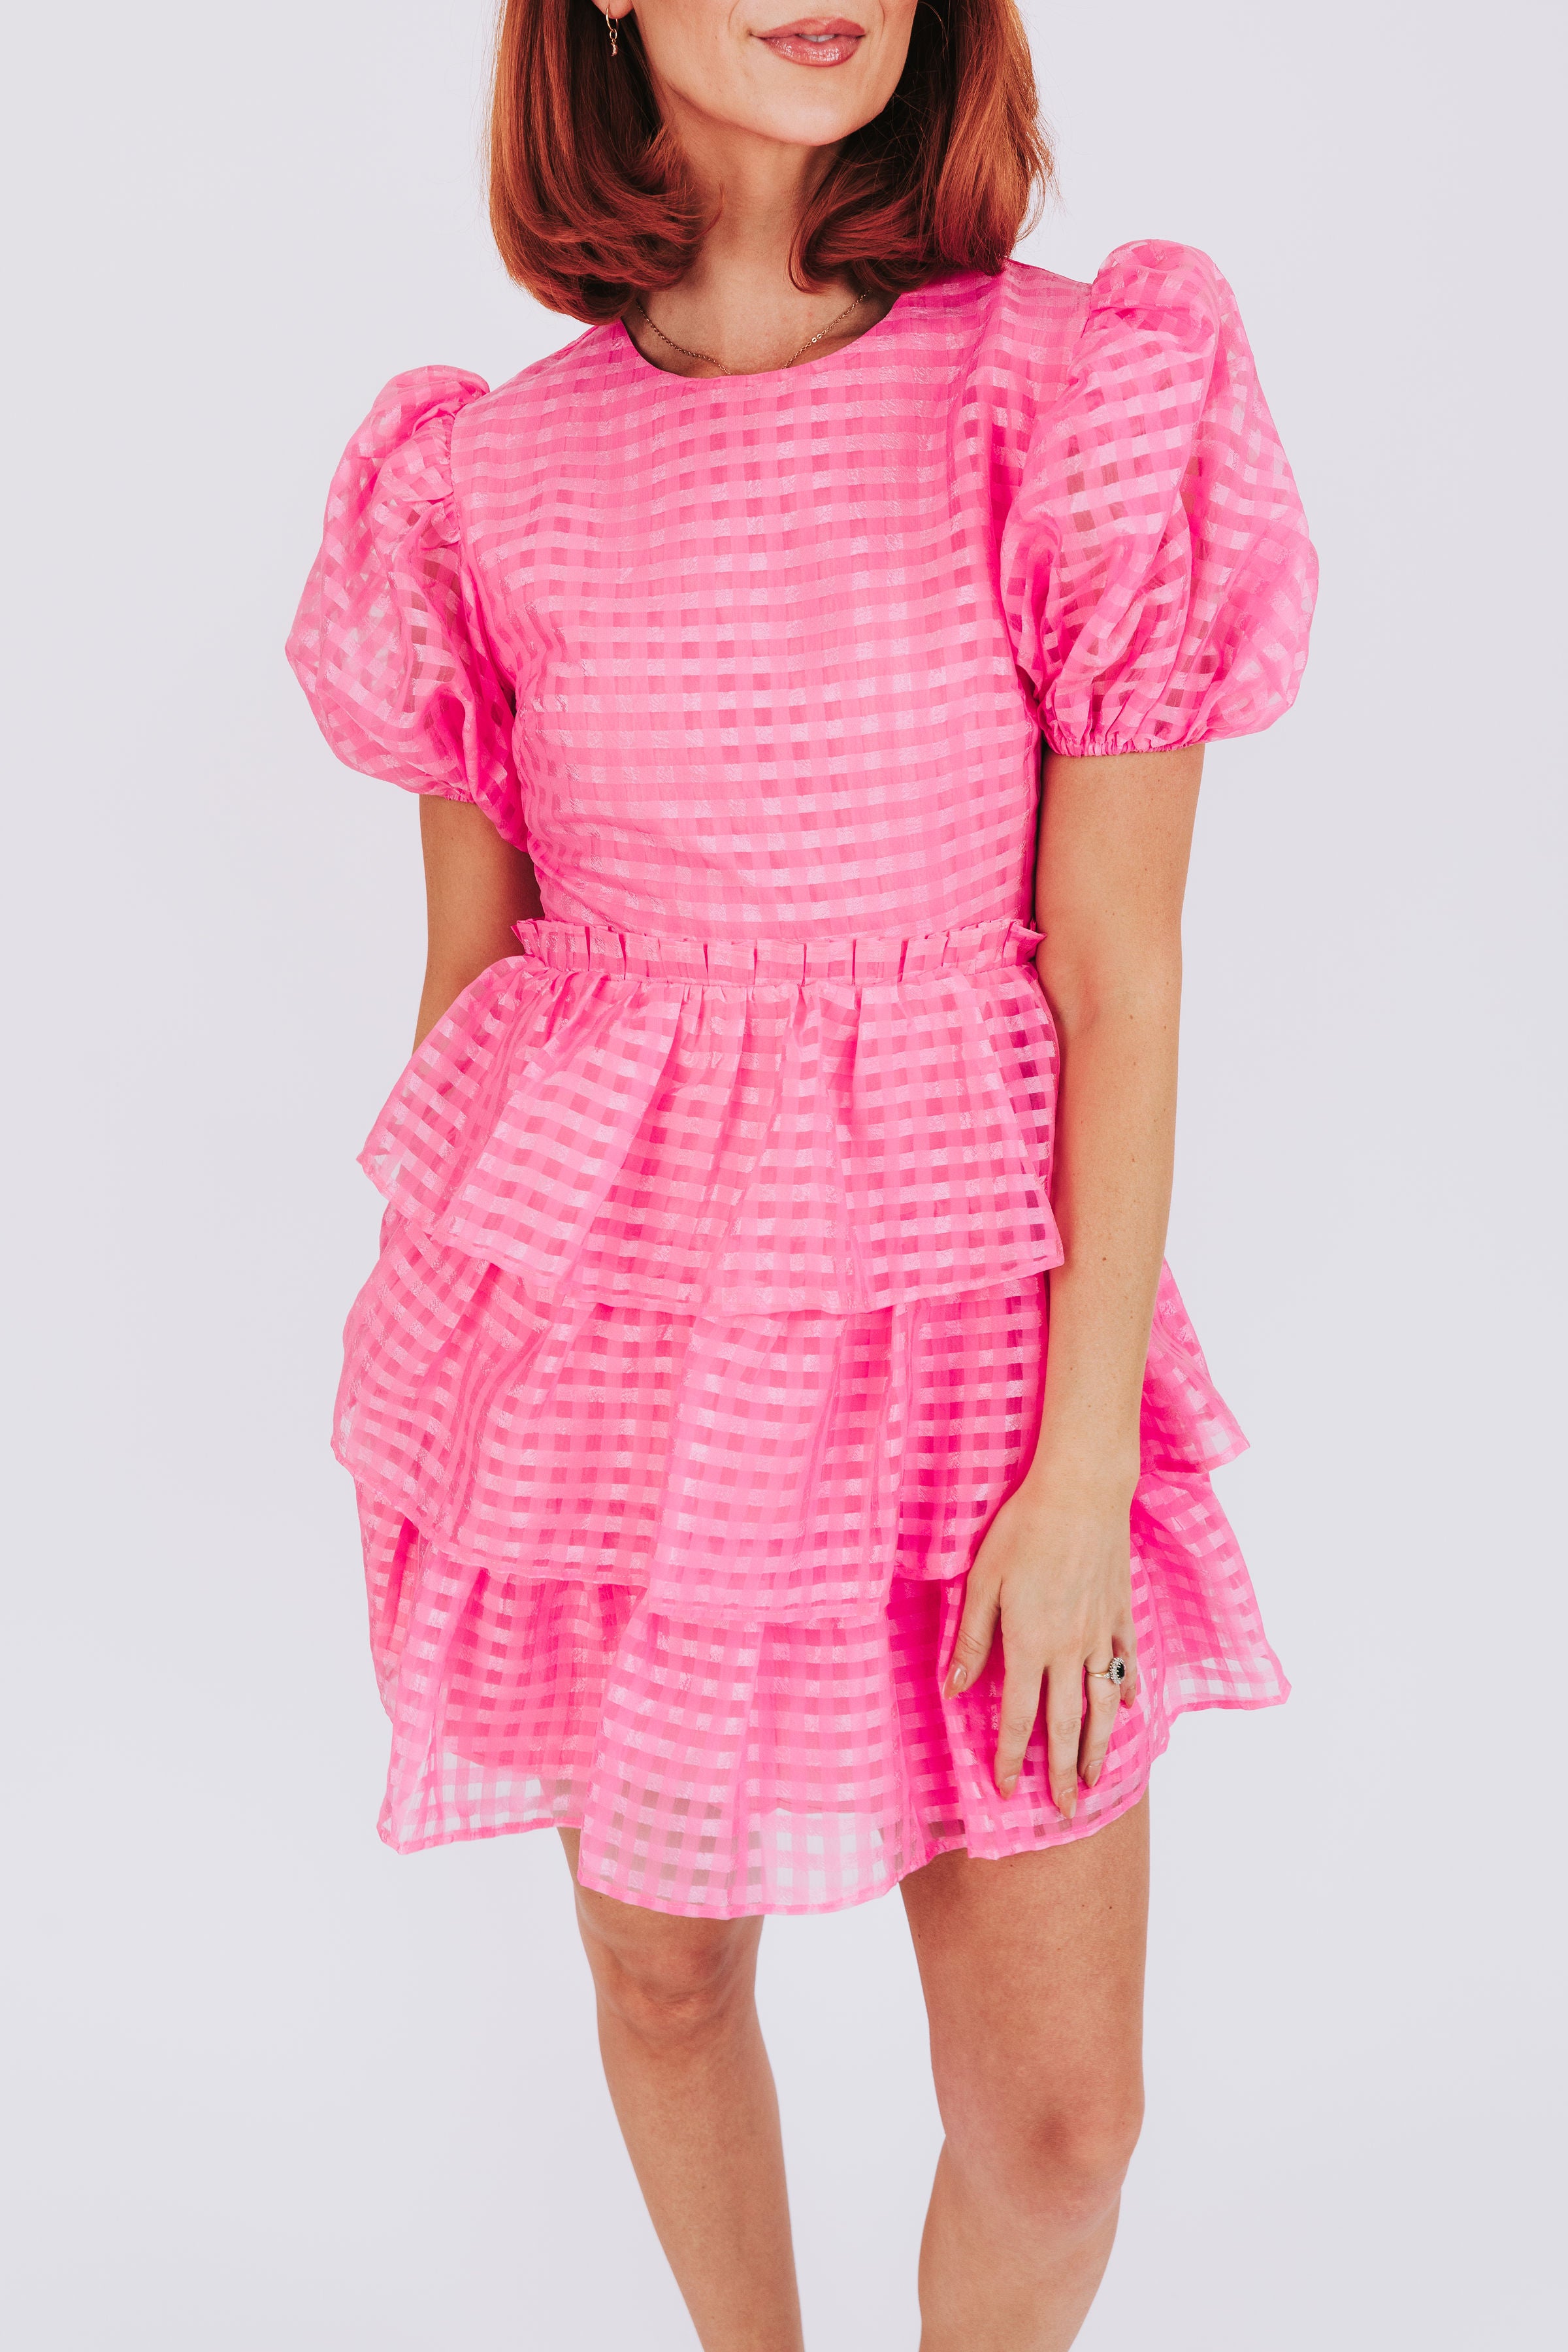 Pinky Swear Dress